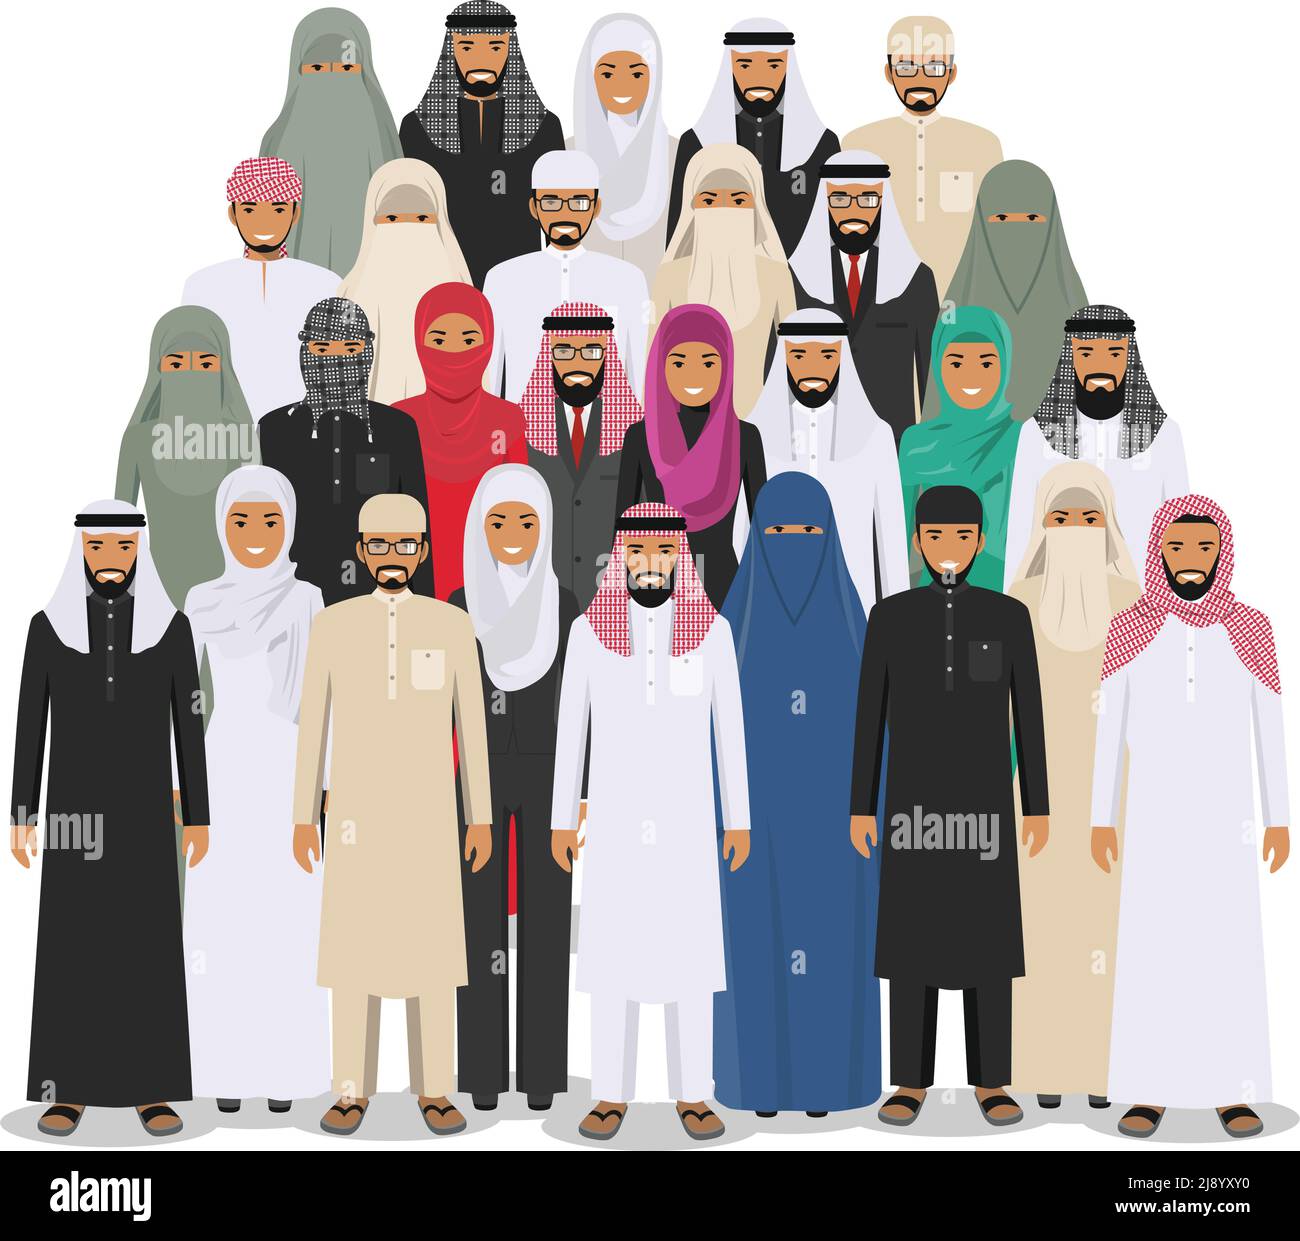 Arabischer Mann und Frau stehen in verschiedenen traditionellen islamischen Kleidern auf weißem Hintergrund in flachem Stil zusammen. Verschiedene Kleiderstile. Flaches Design p Stock Vektor